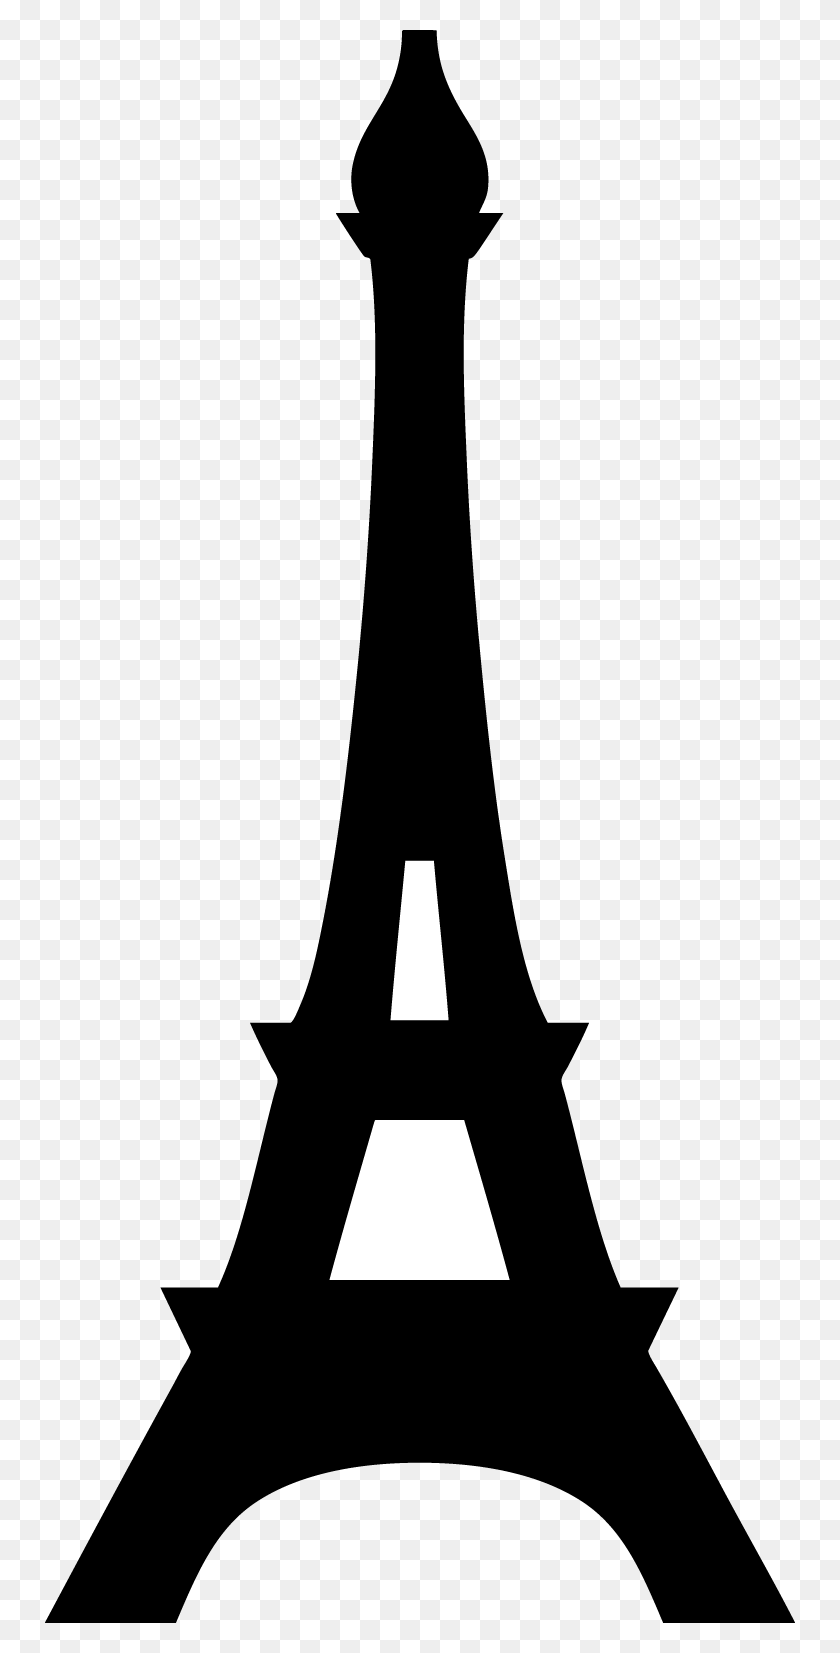 750x1593 Лучшие Развлечения В Париже - Эйфелева Башня В Париже Клипарт